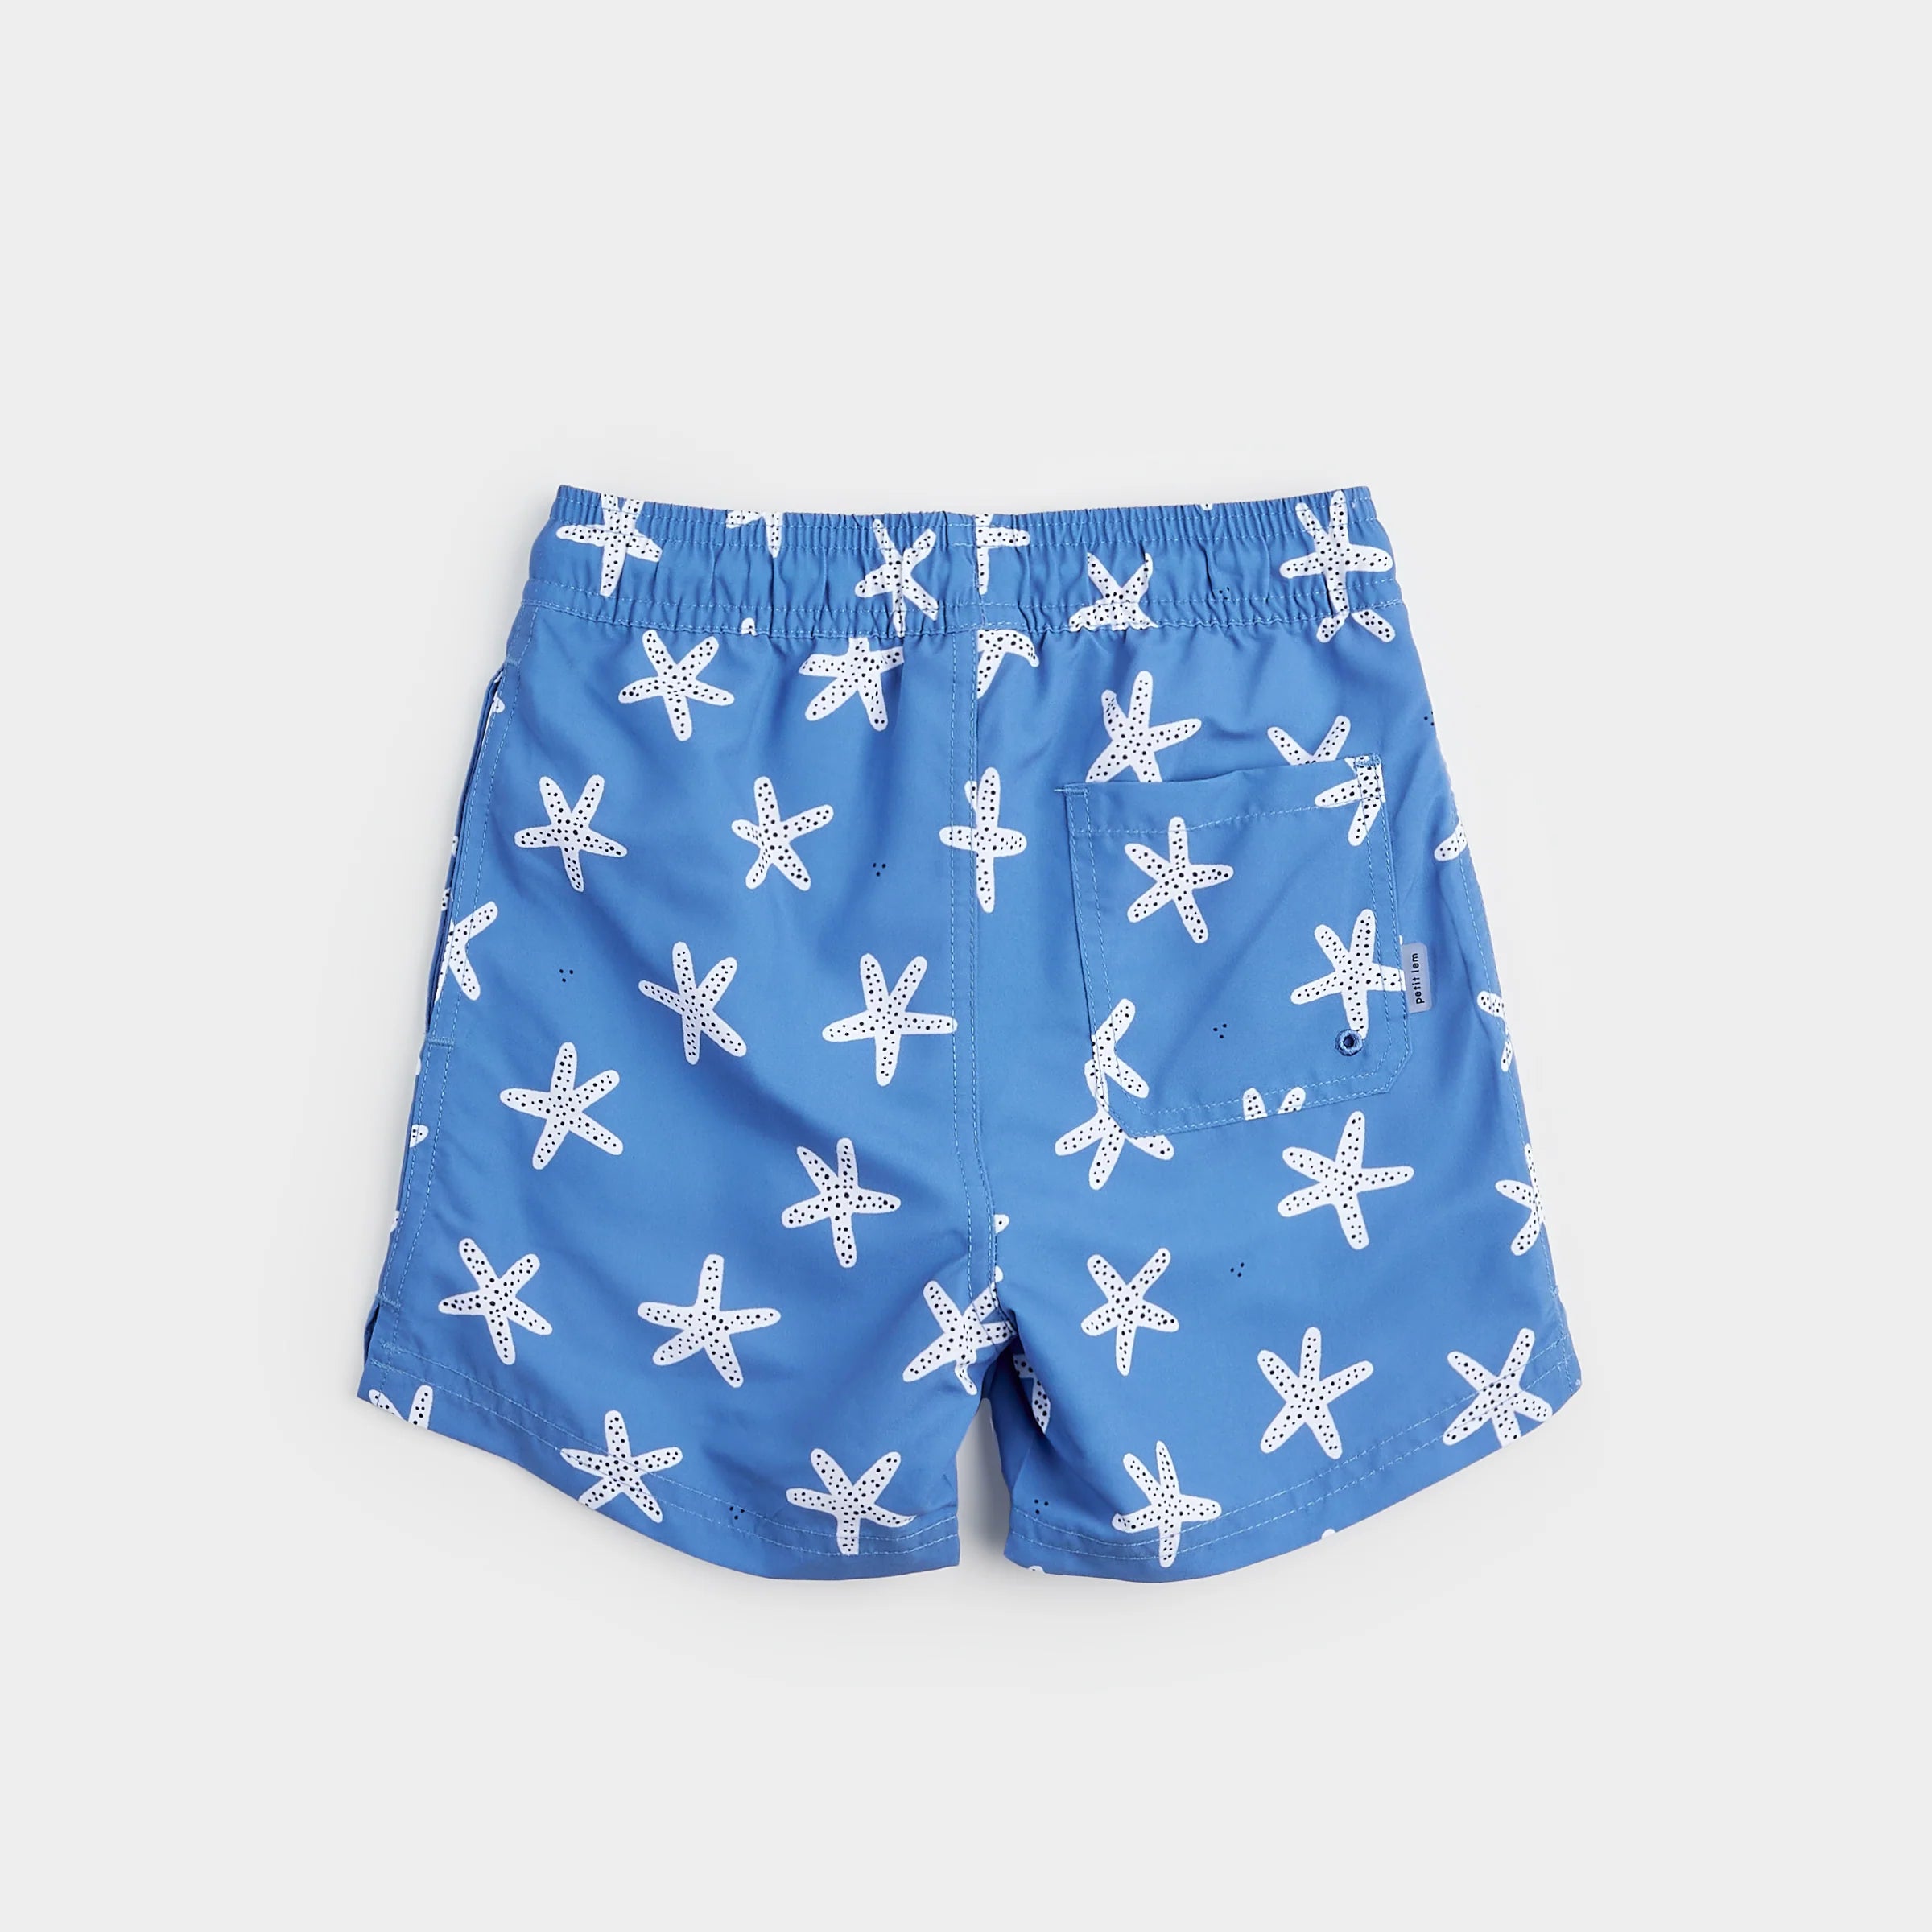 Starfish Print On Riviera Blue Swim Trunks